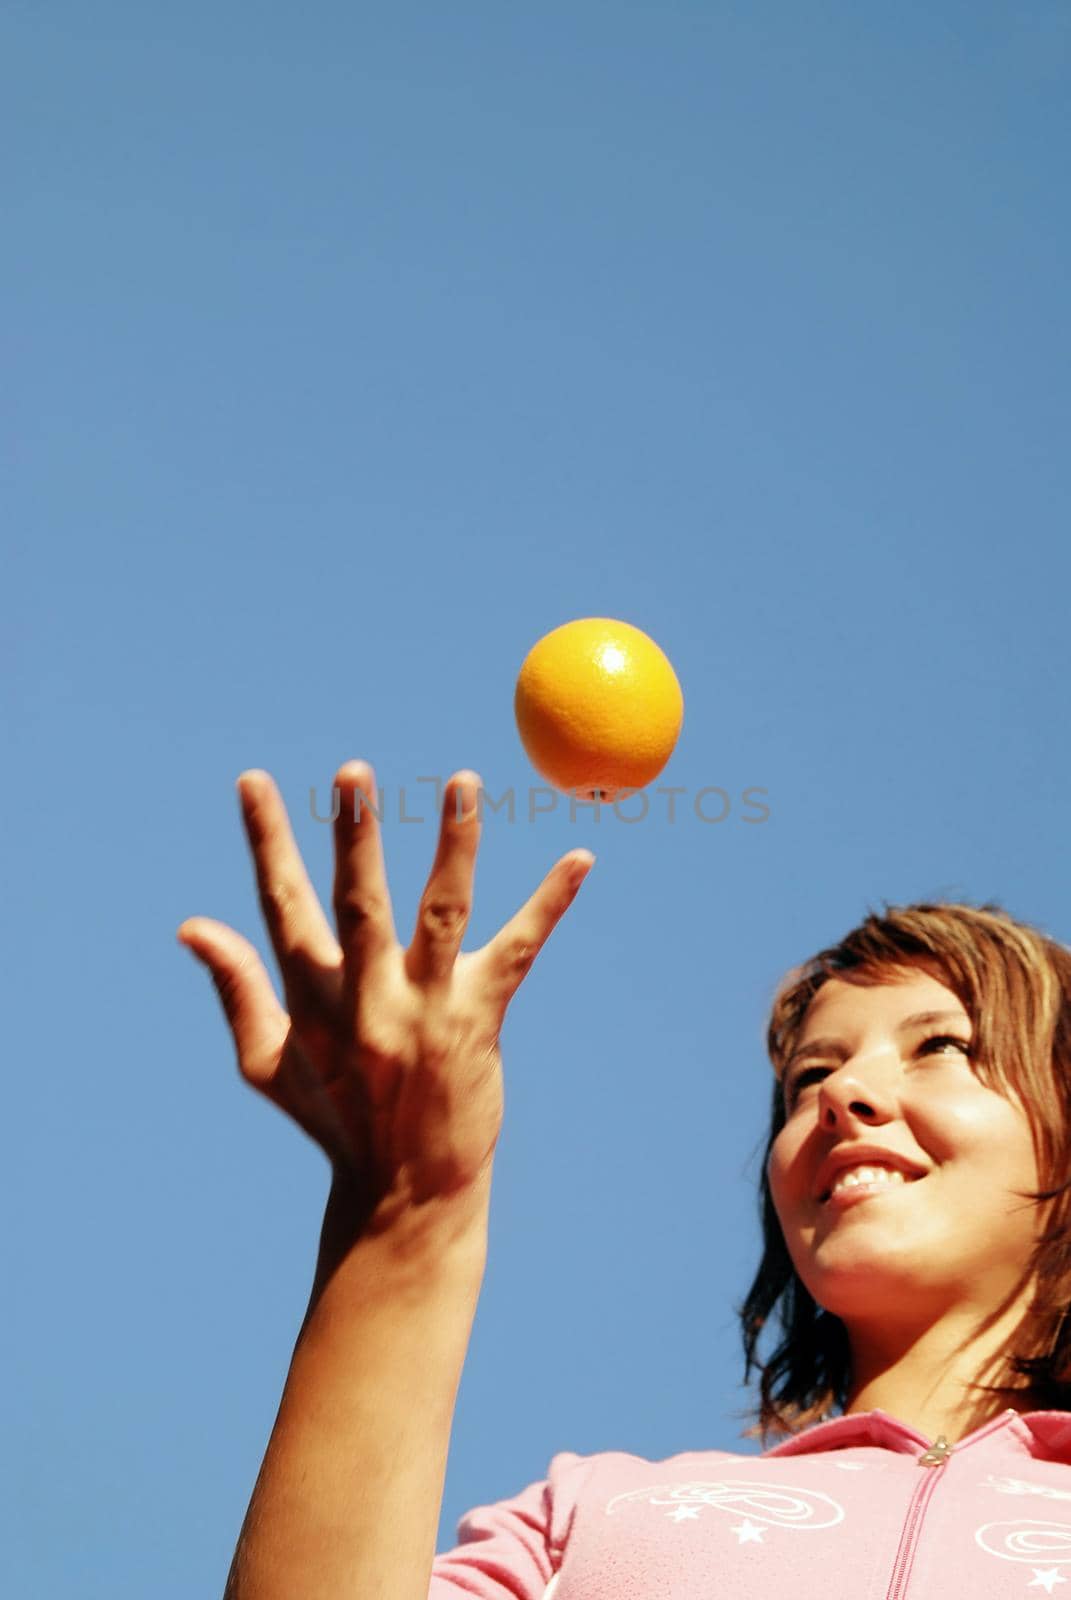 beautyful girl throwing orange in air by dotshock